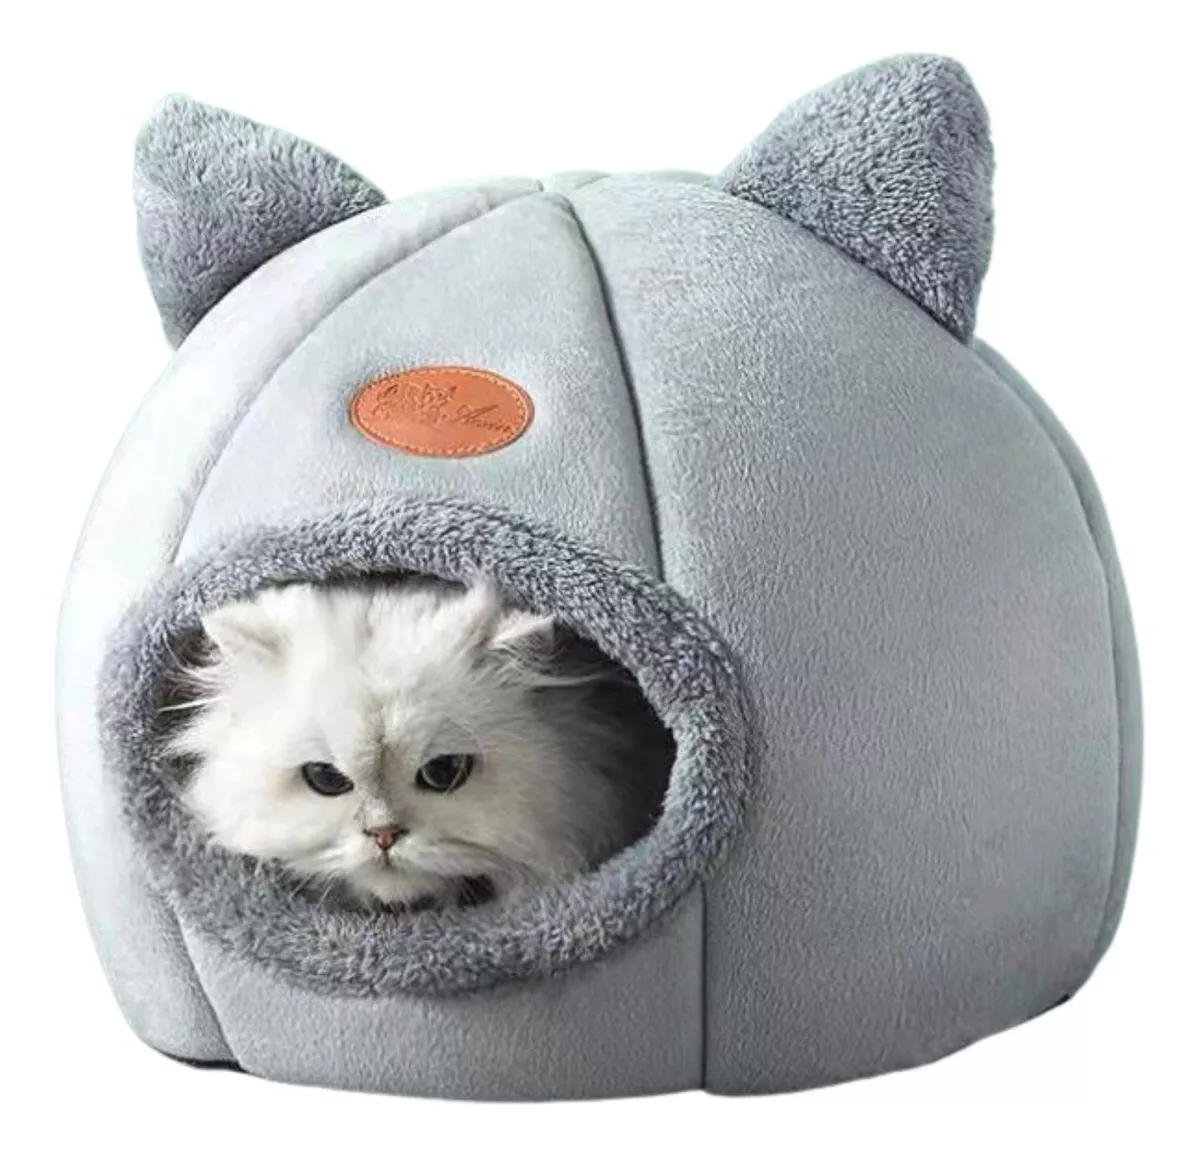 Primera imagen para búsqueda de cama iglu para gatos